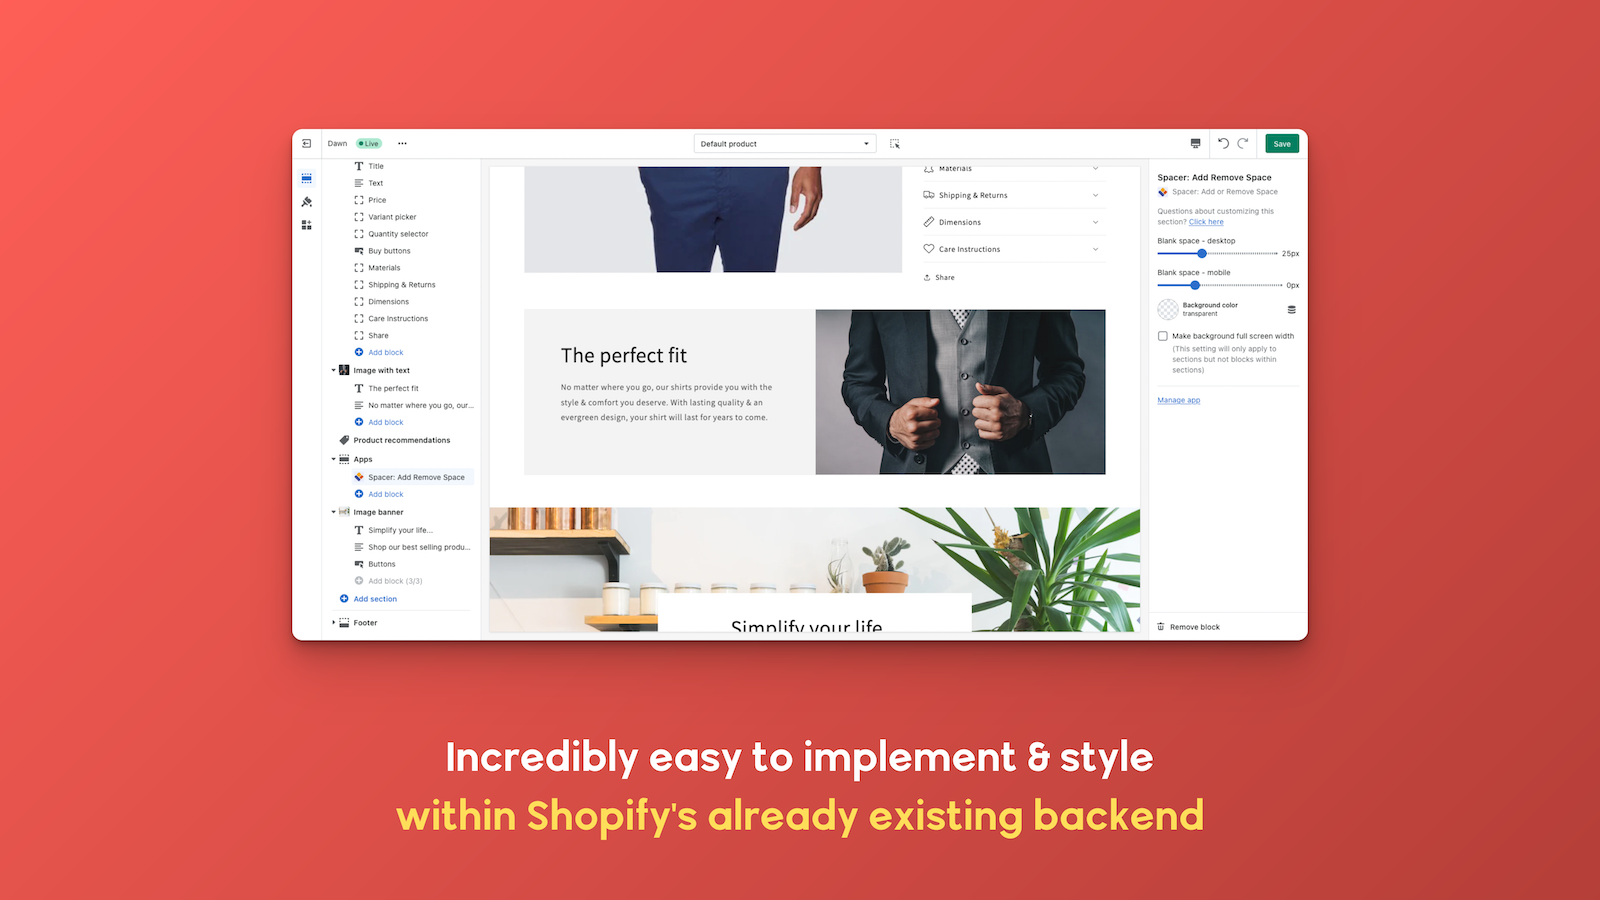 Unglaublich einfach zu implementieren und zu gestalten innerhalb von Shopify's Backend